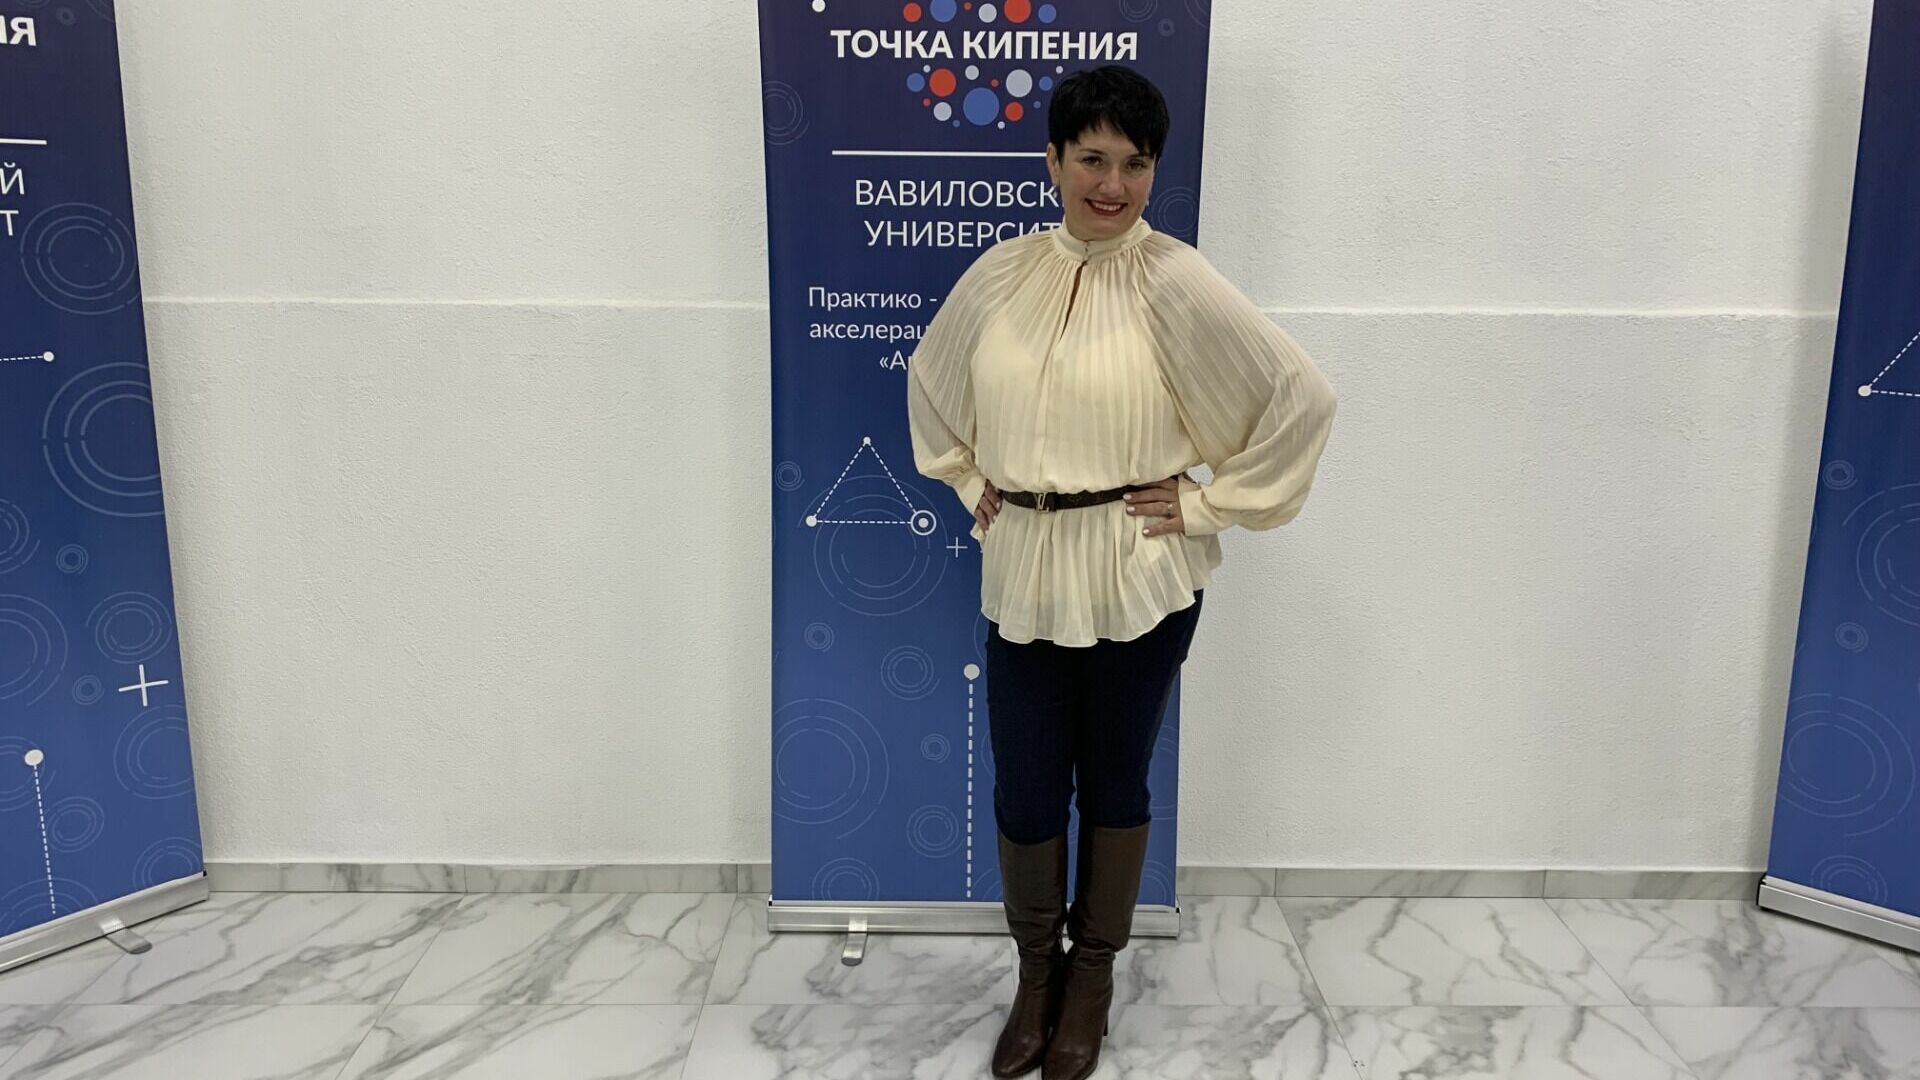 Анна Кровякова побывала на открытии "Точки кипения" в Саратове